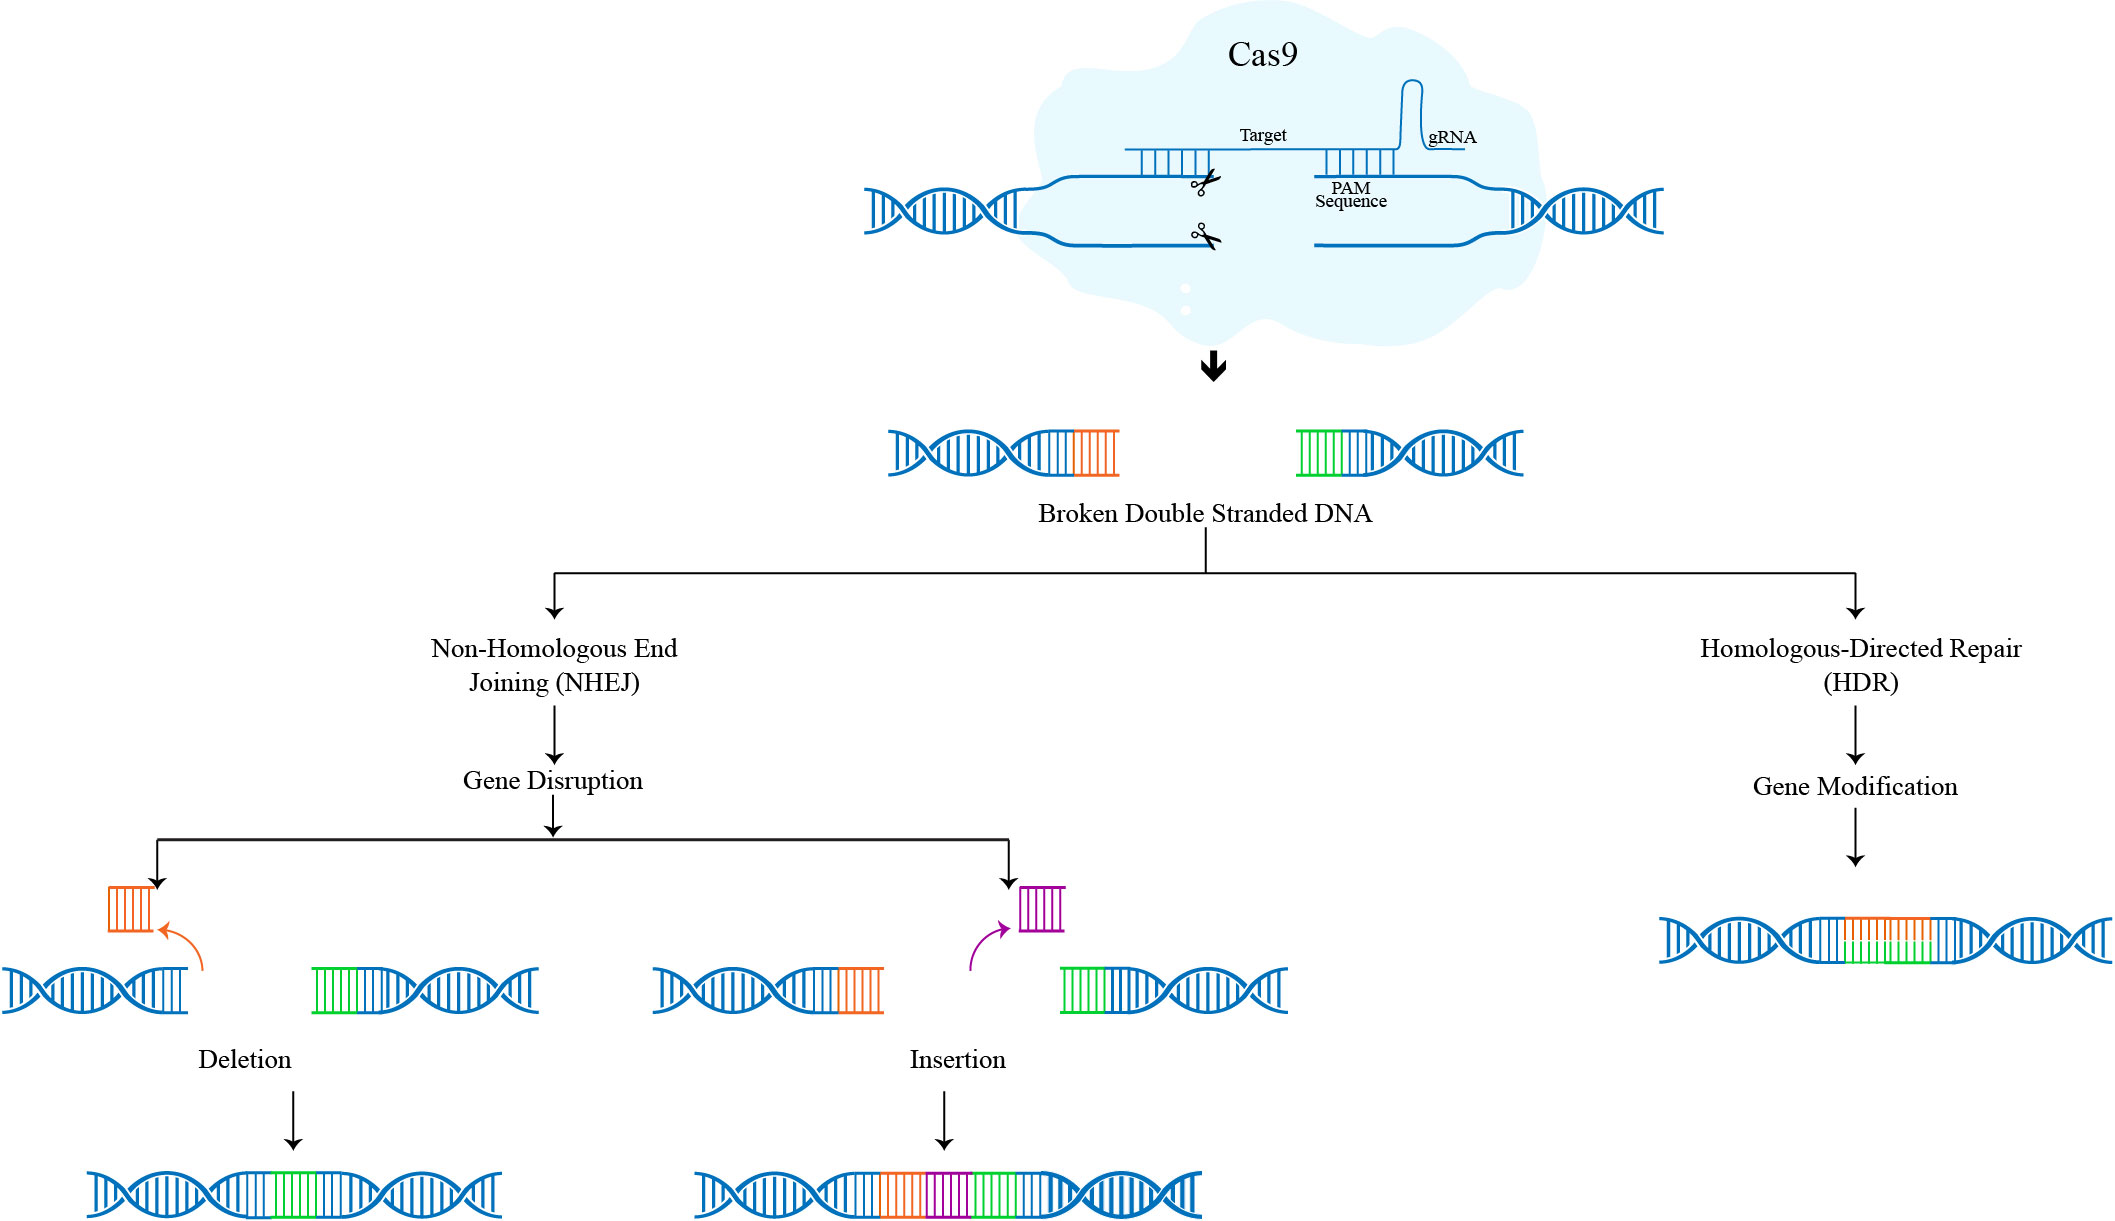 Role of CRISPR-Cas9 in Genome Editing